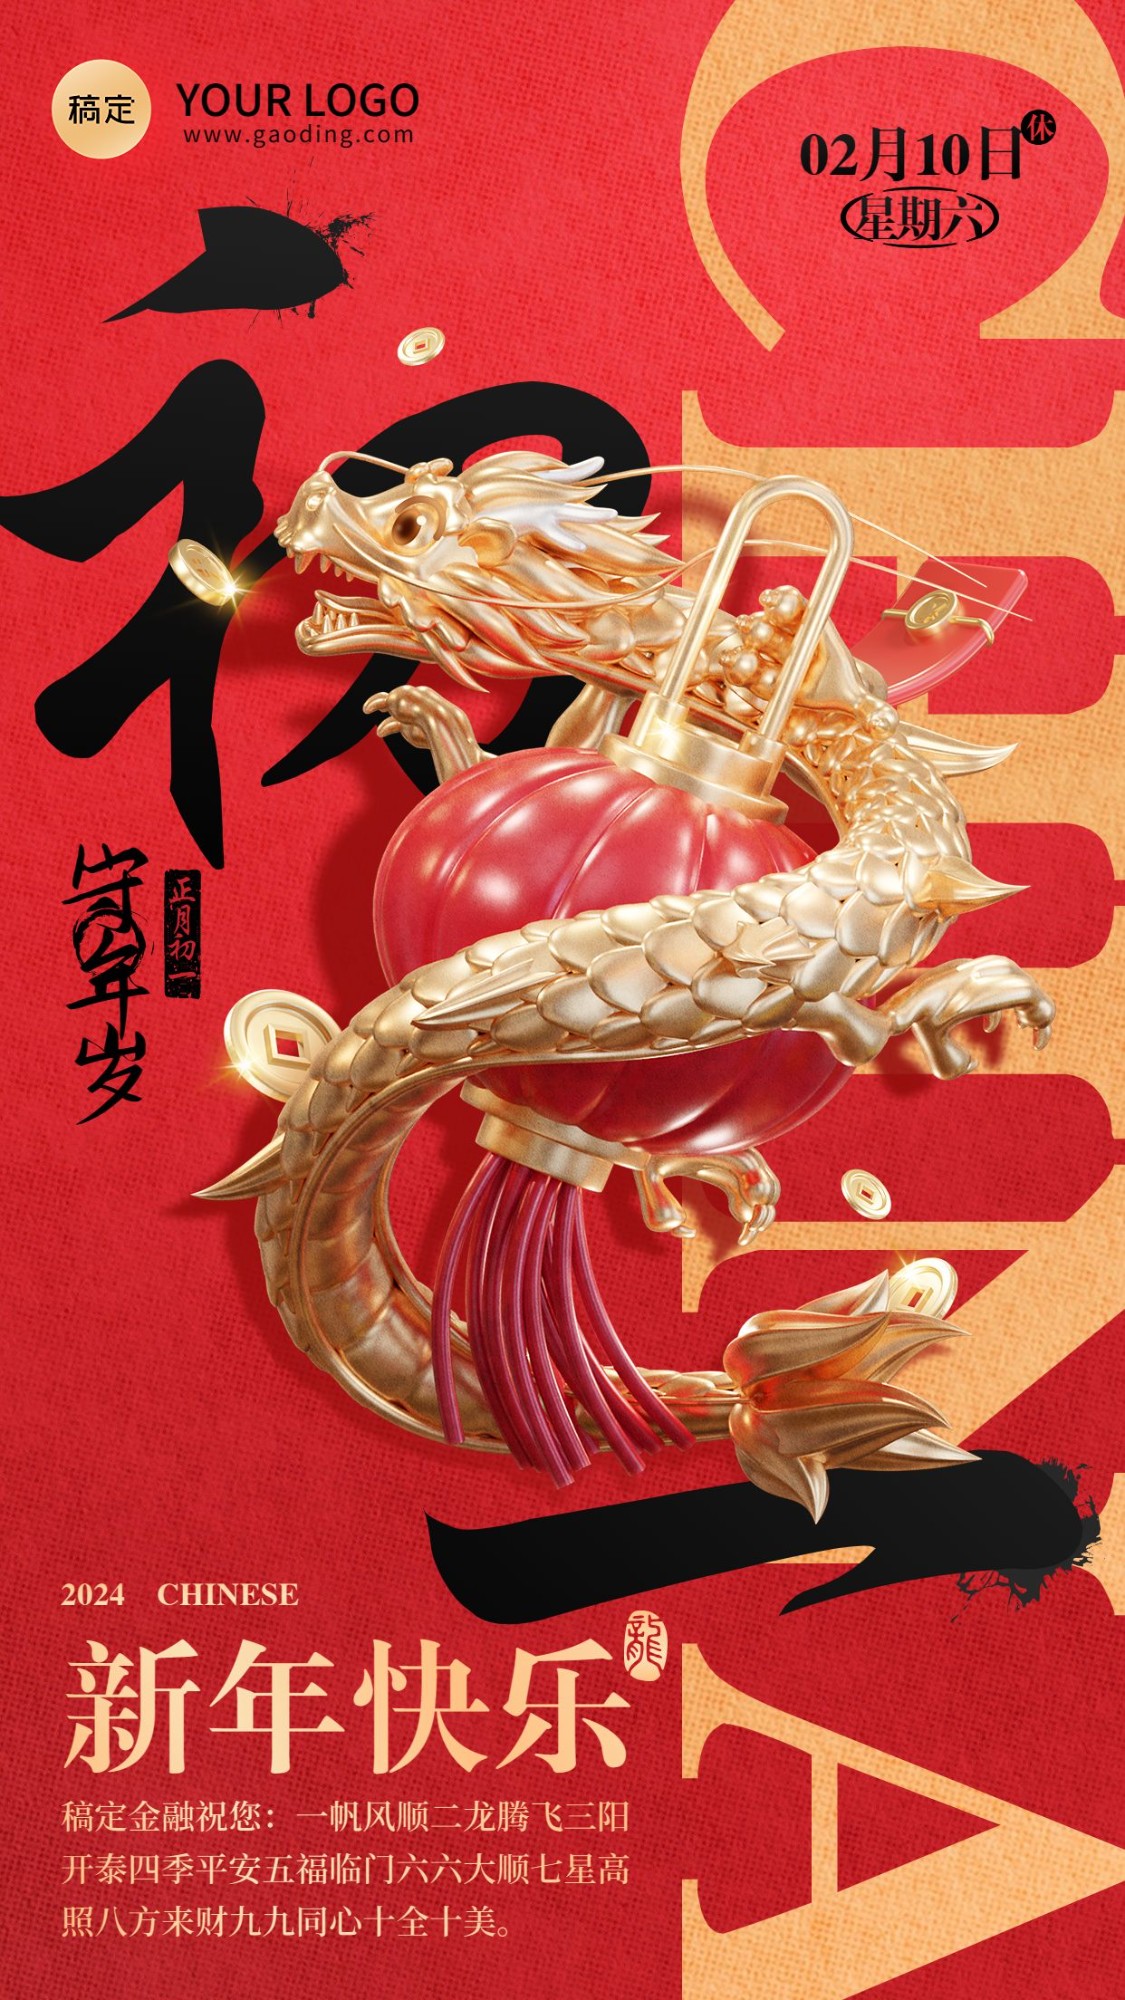 龙年春节正月初一金融保险节日祝福问候3D喜庆大字手机海报套系